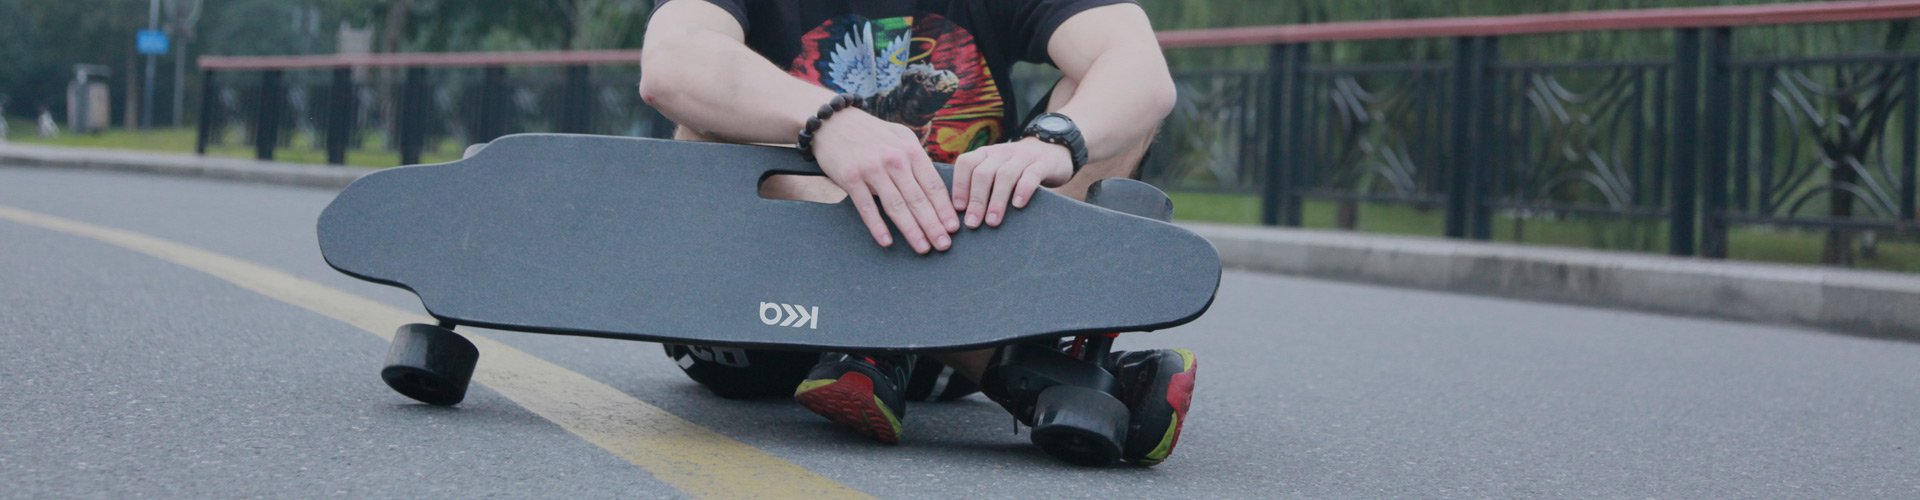 Tablero de skate eléctrico Longboard eléctrico con Argentina